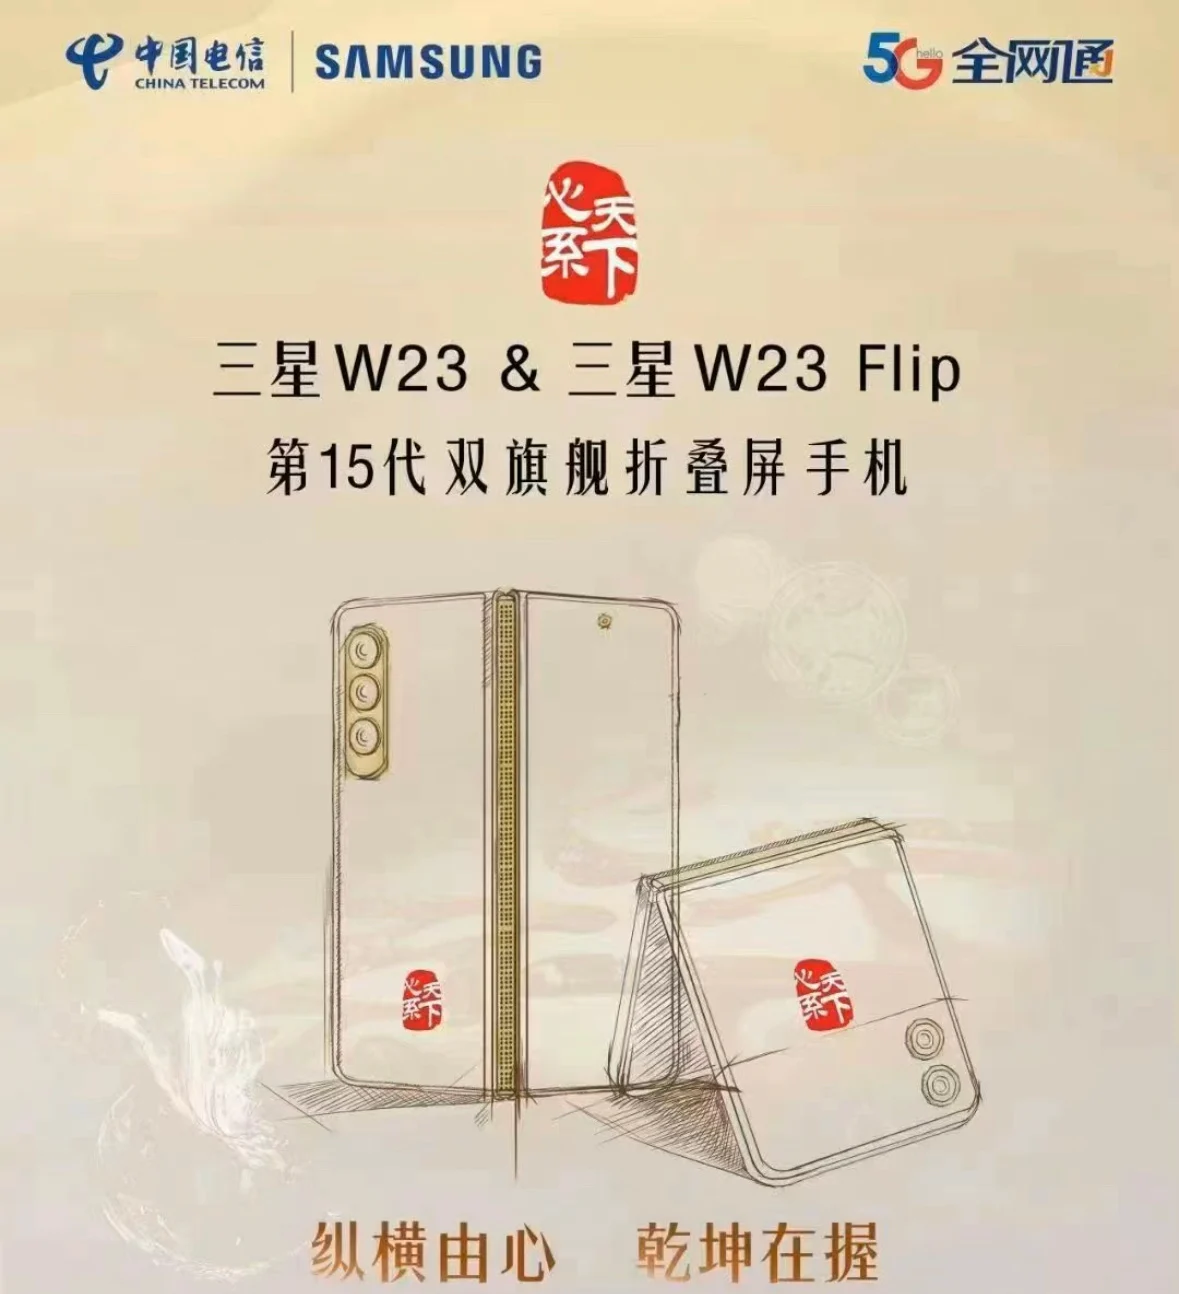 Складной смартфон Samsung W23 появился на TENAA перед запуском